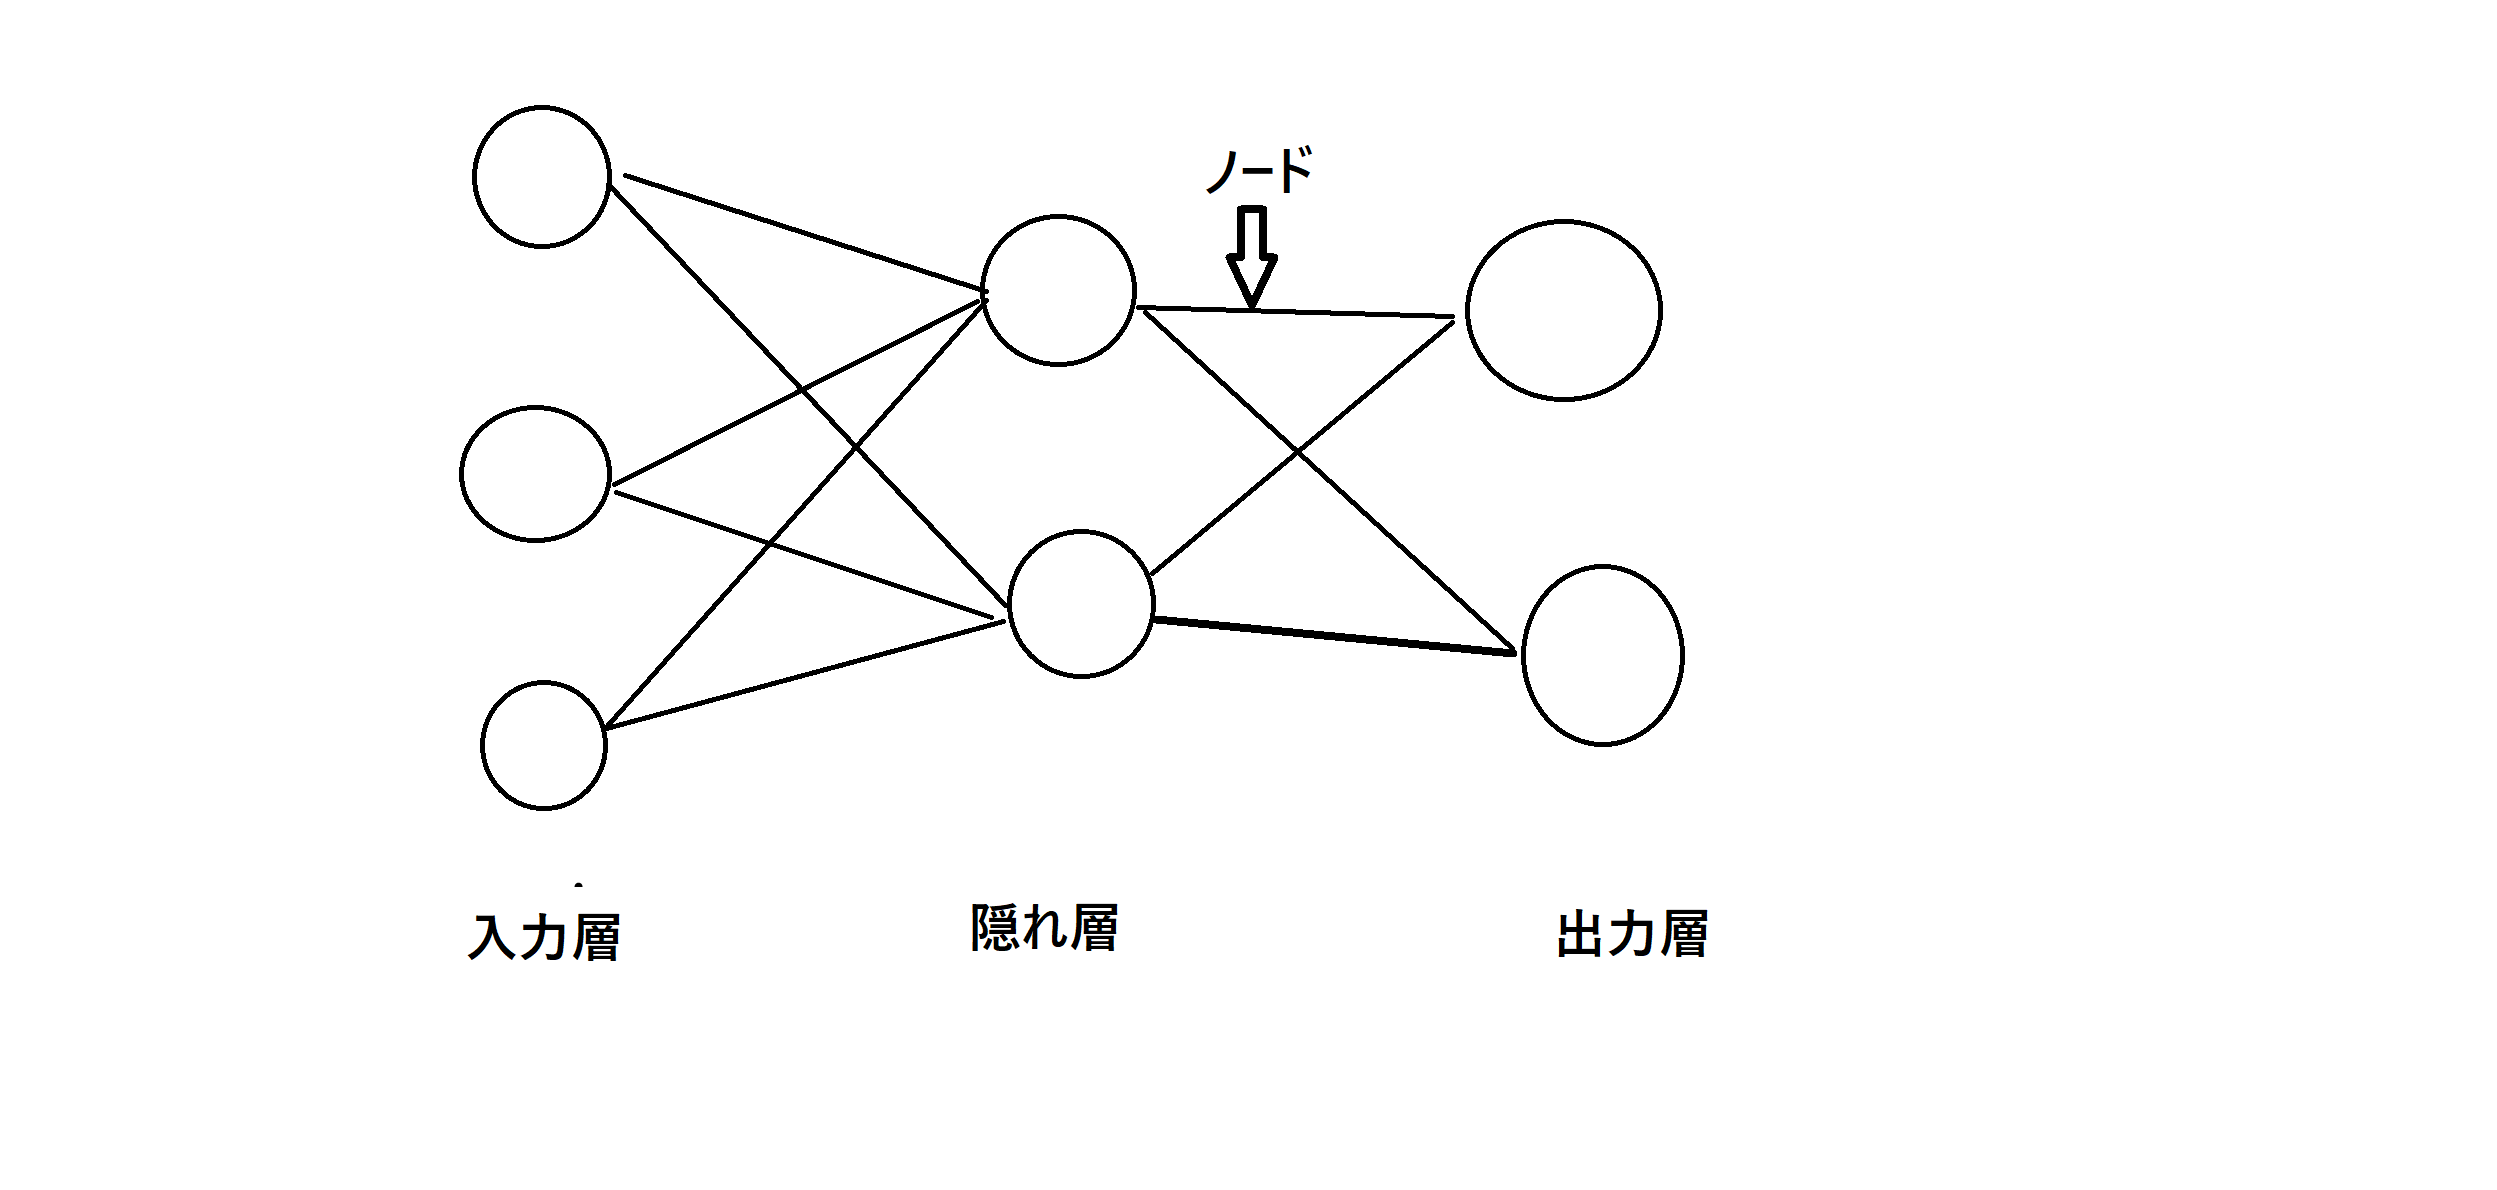 ニューラルネットワークモデル図.png